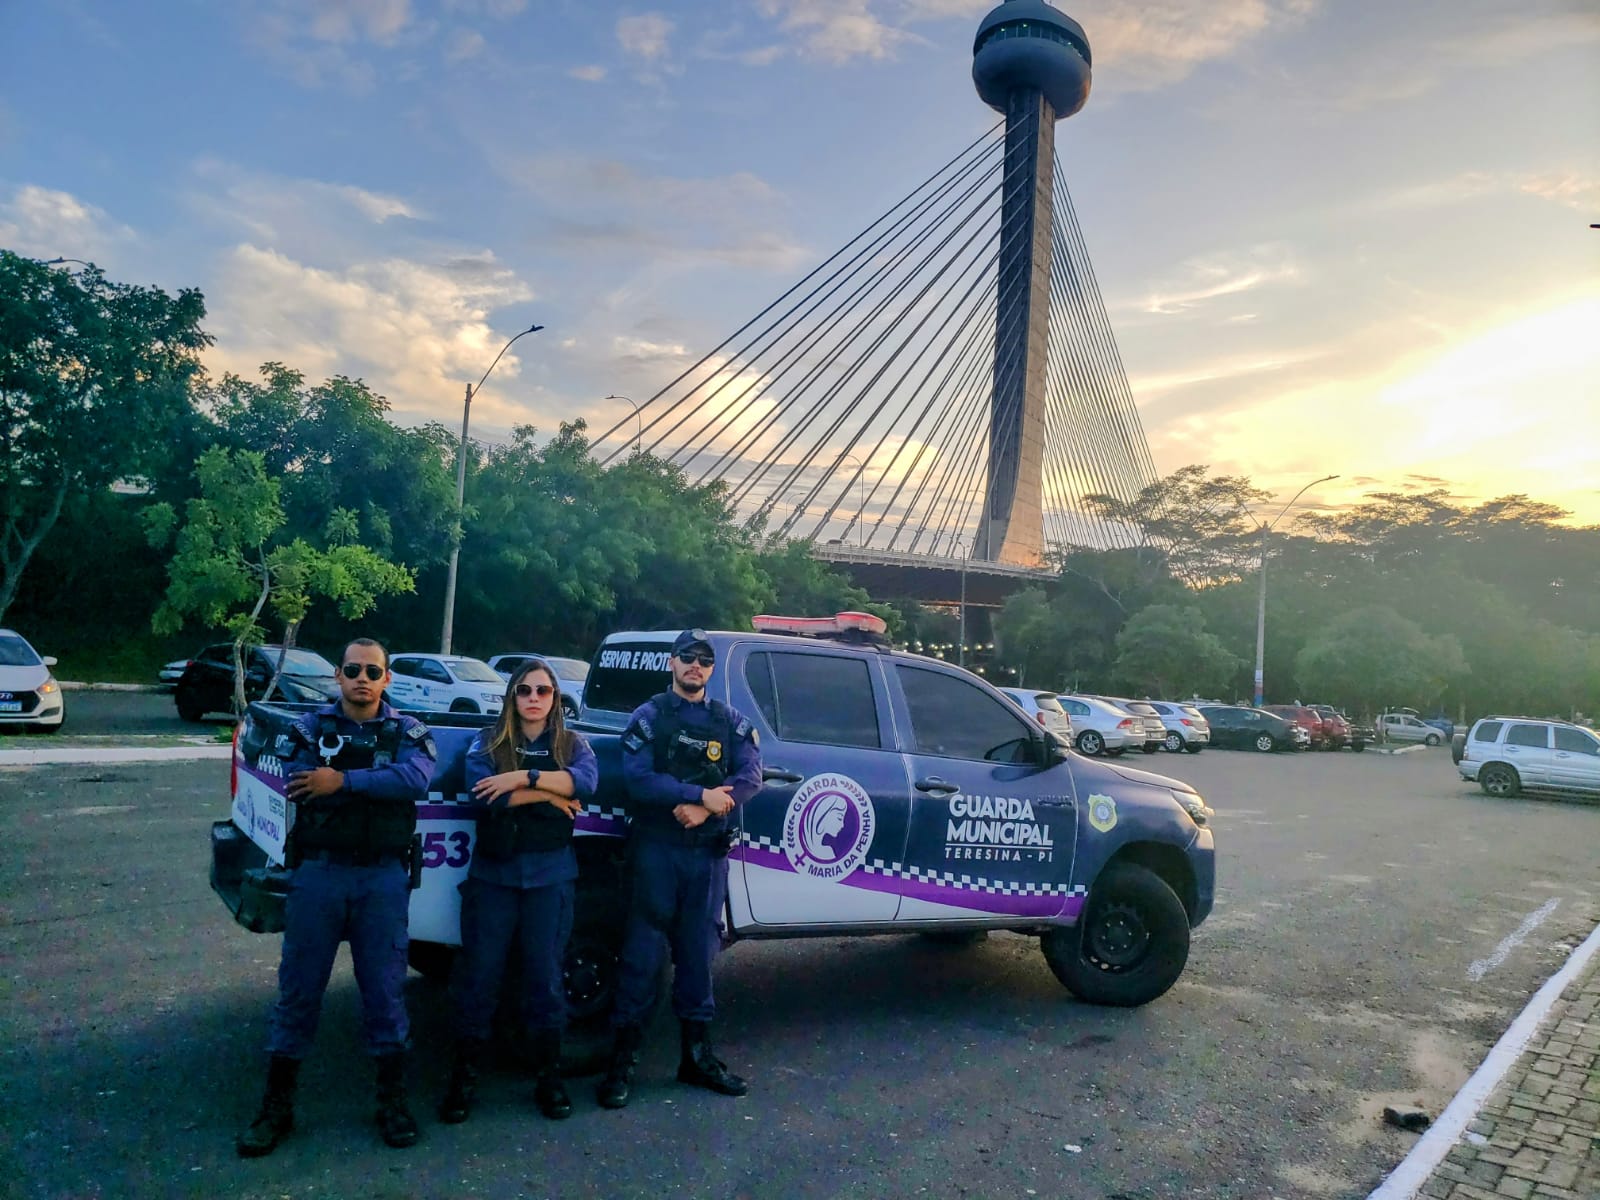 Prefeitura de Teresina coloca em operação a Guarda Municipal Maria da Penha que combate a violência contra as mulheres na capital